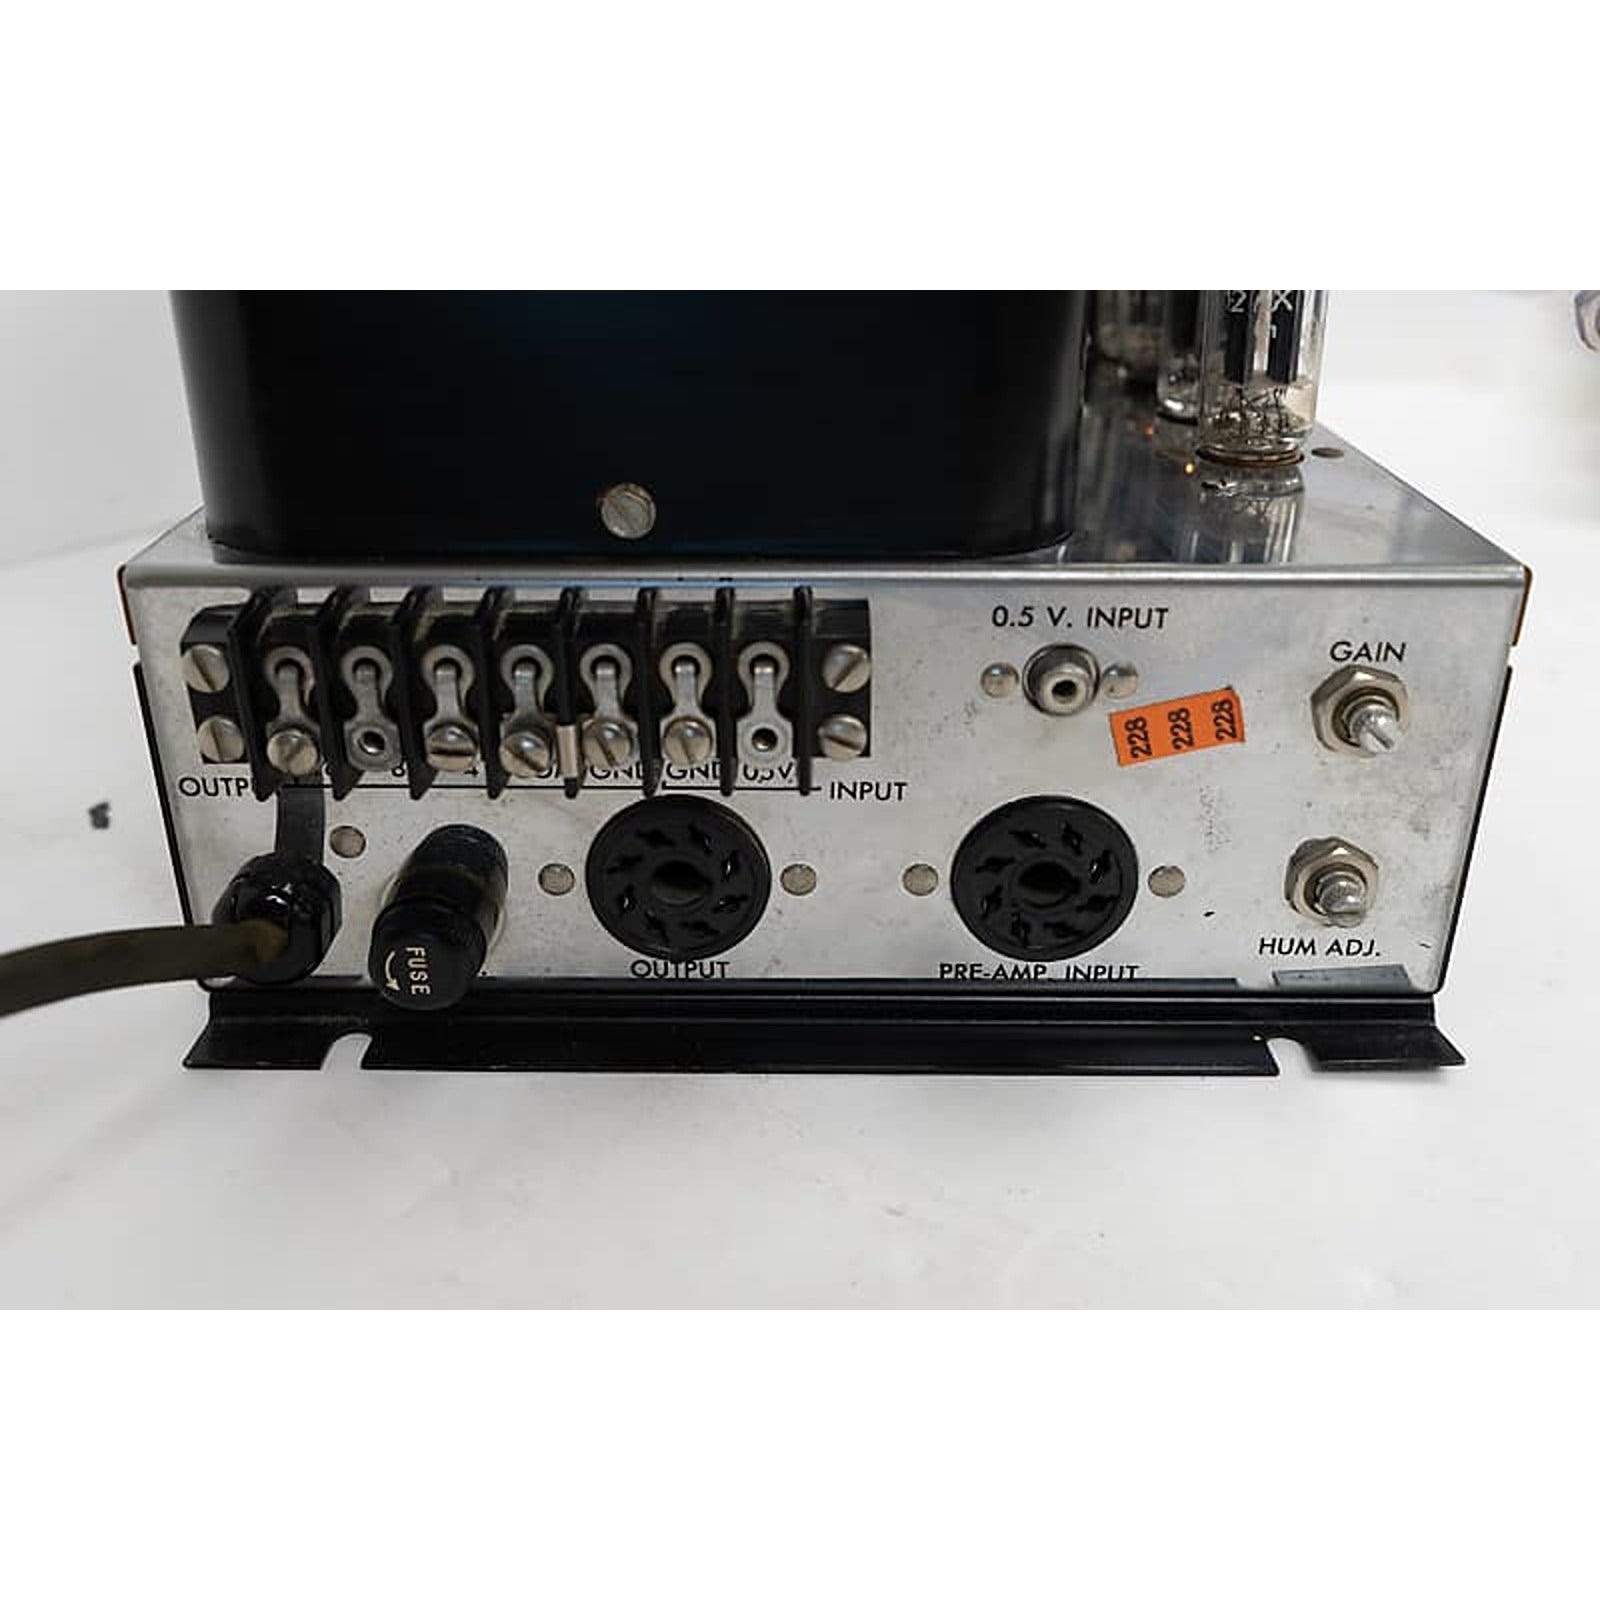 McIntosh MC-30 Mono Block Amplifier (Pair) - Excellent Condition